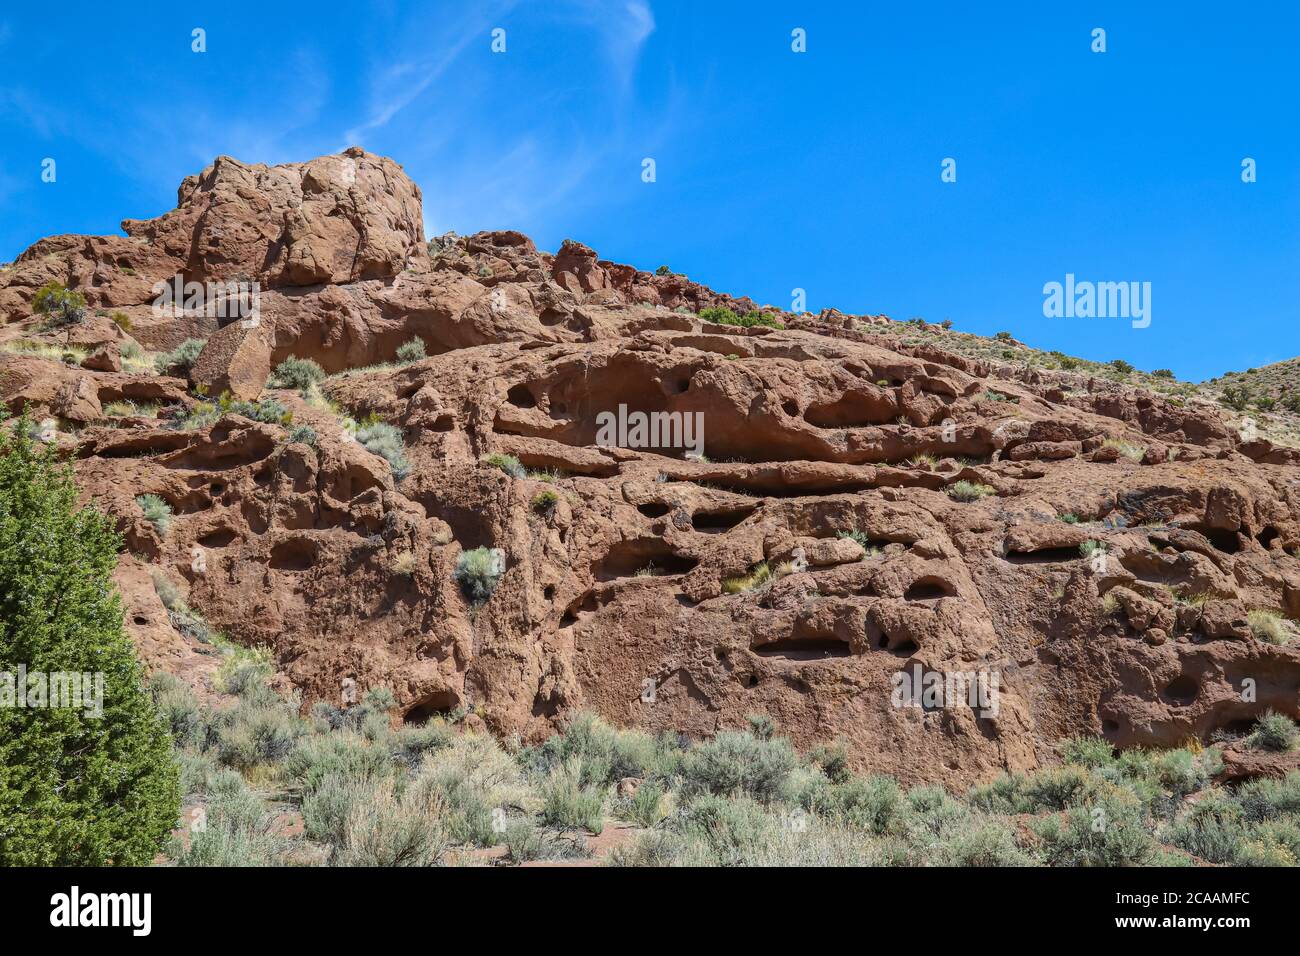 VIRGINIA MOUNTAINS, NEVADA, STATI UNITI - Apr 22, 2020: La Monkey Condos, una formazione rocciosa inquietante di molte piccole grotte nella roccia rossa del deserto, è una Foto Stock